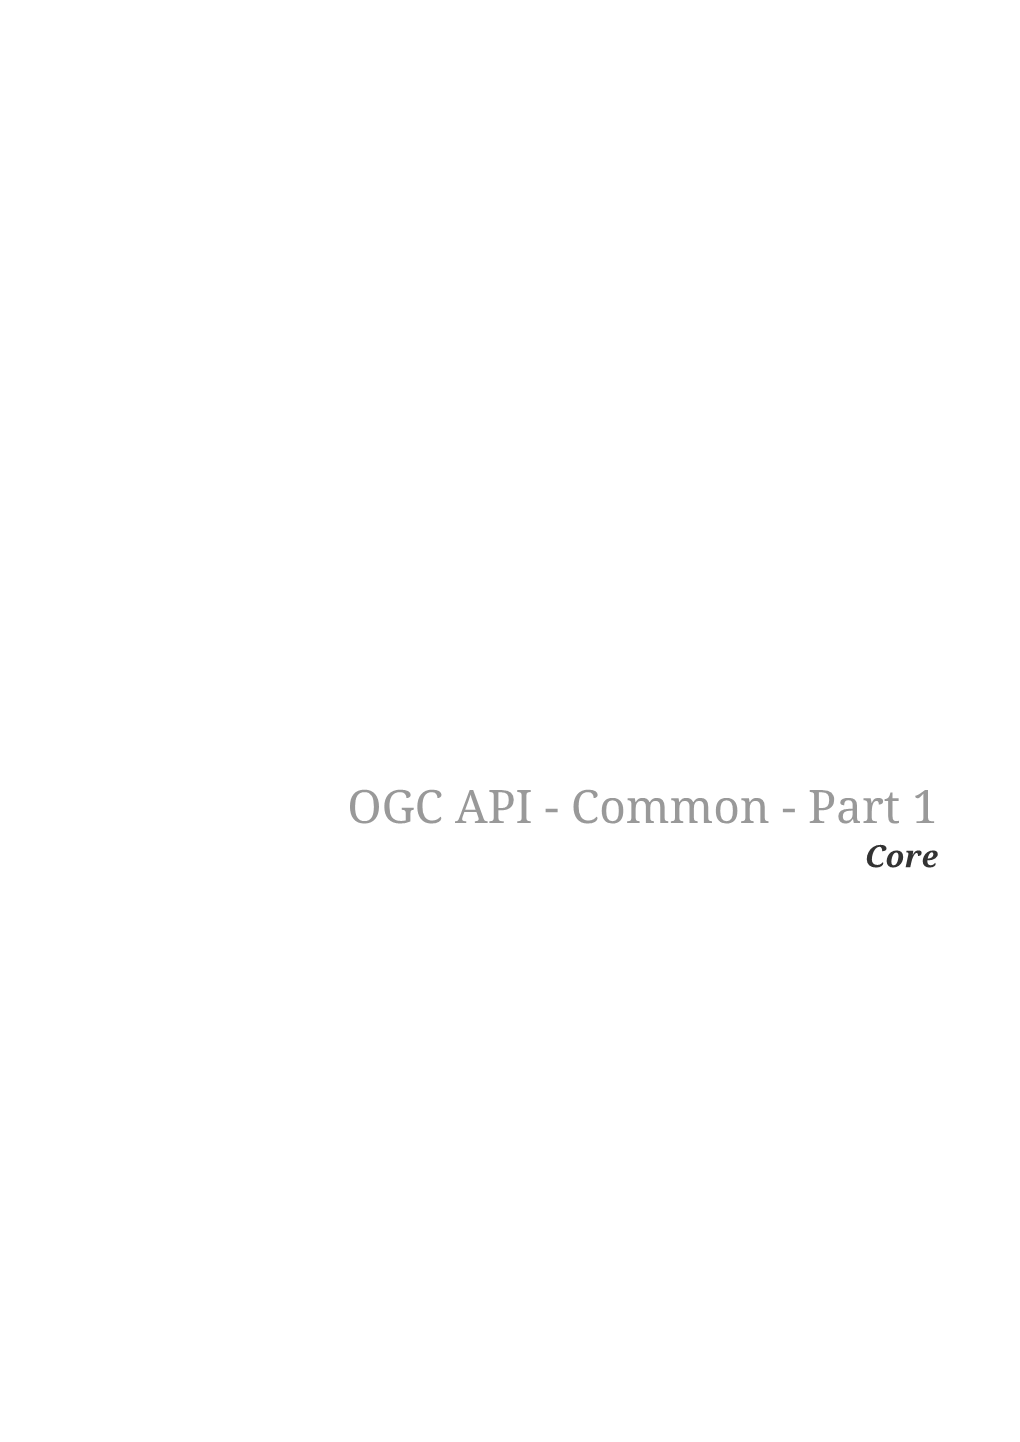 OGC API - Common - Part 1 Core Open Geospatial Consortium